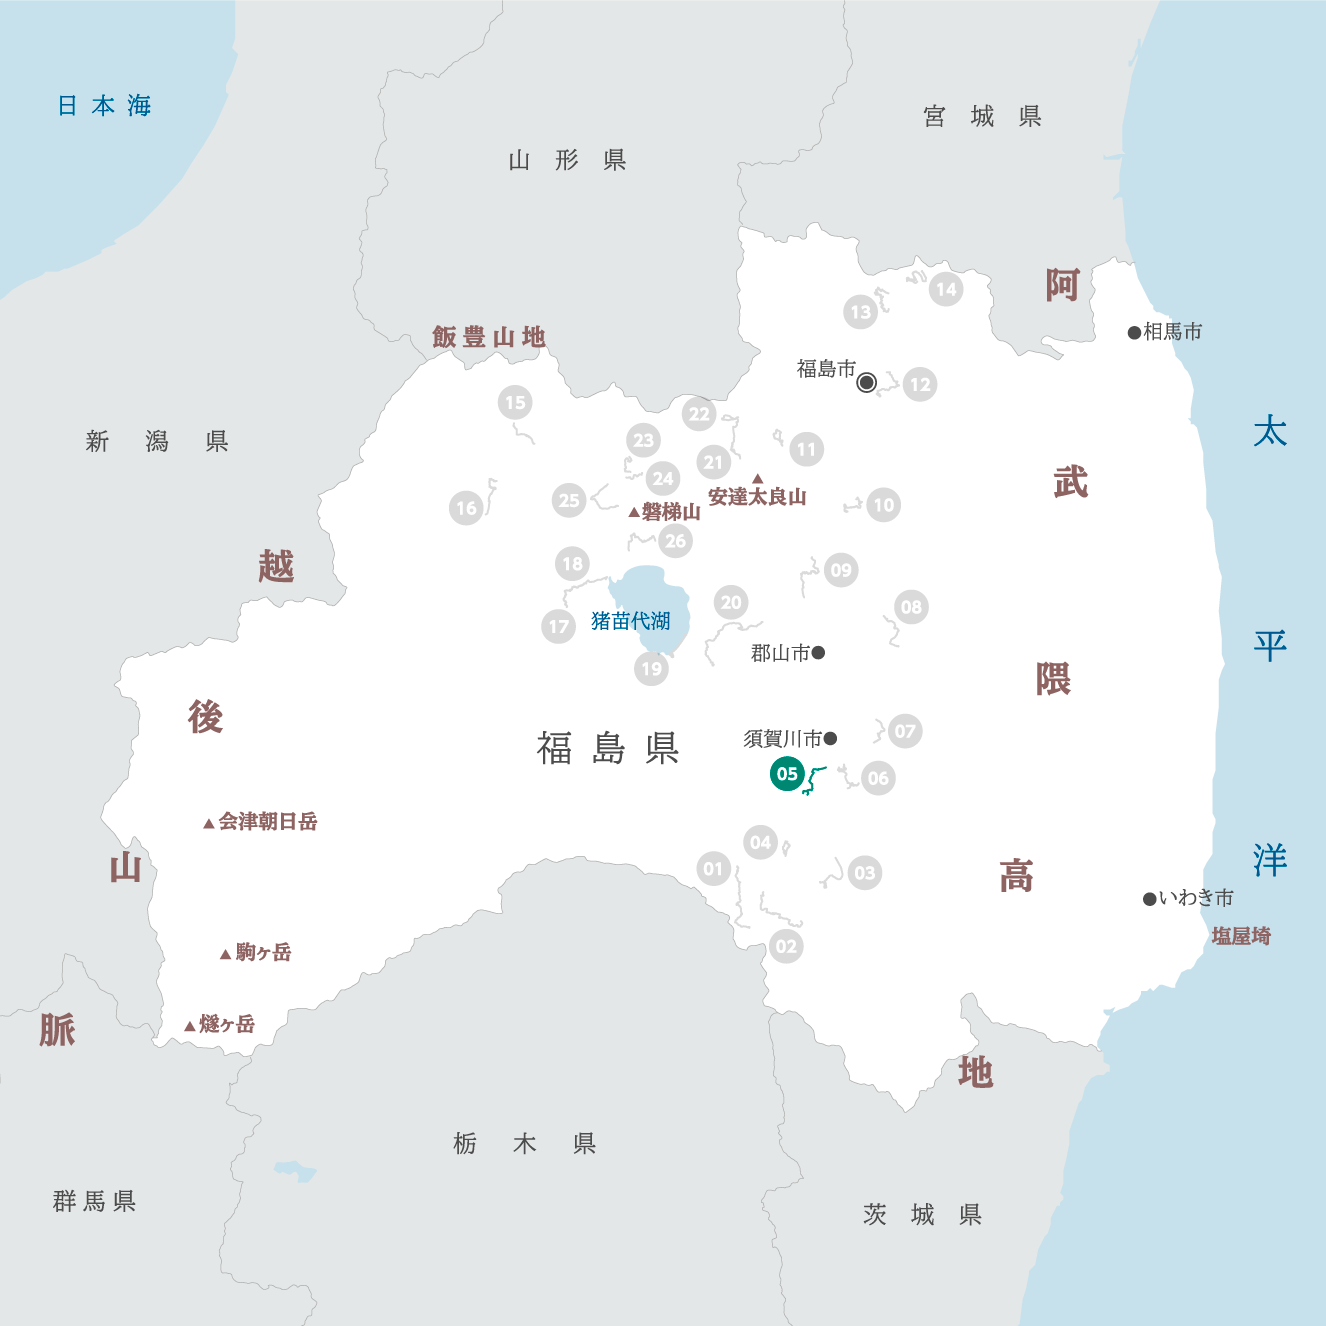 福島県の地図